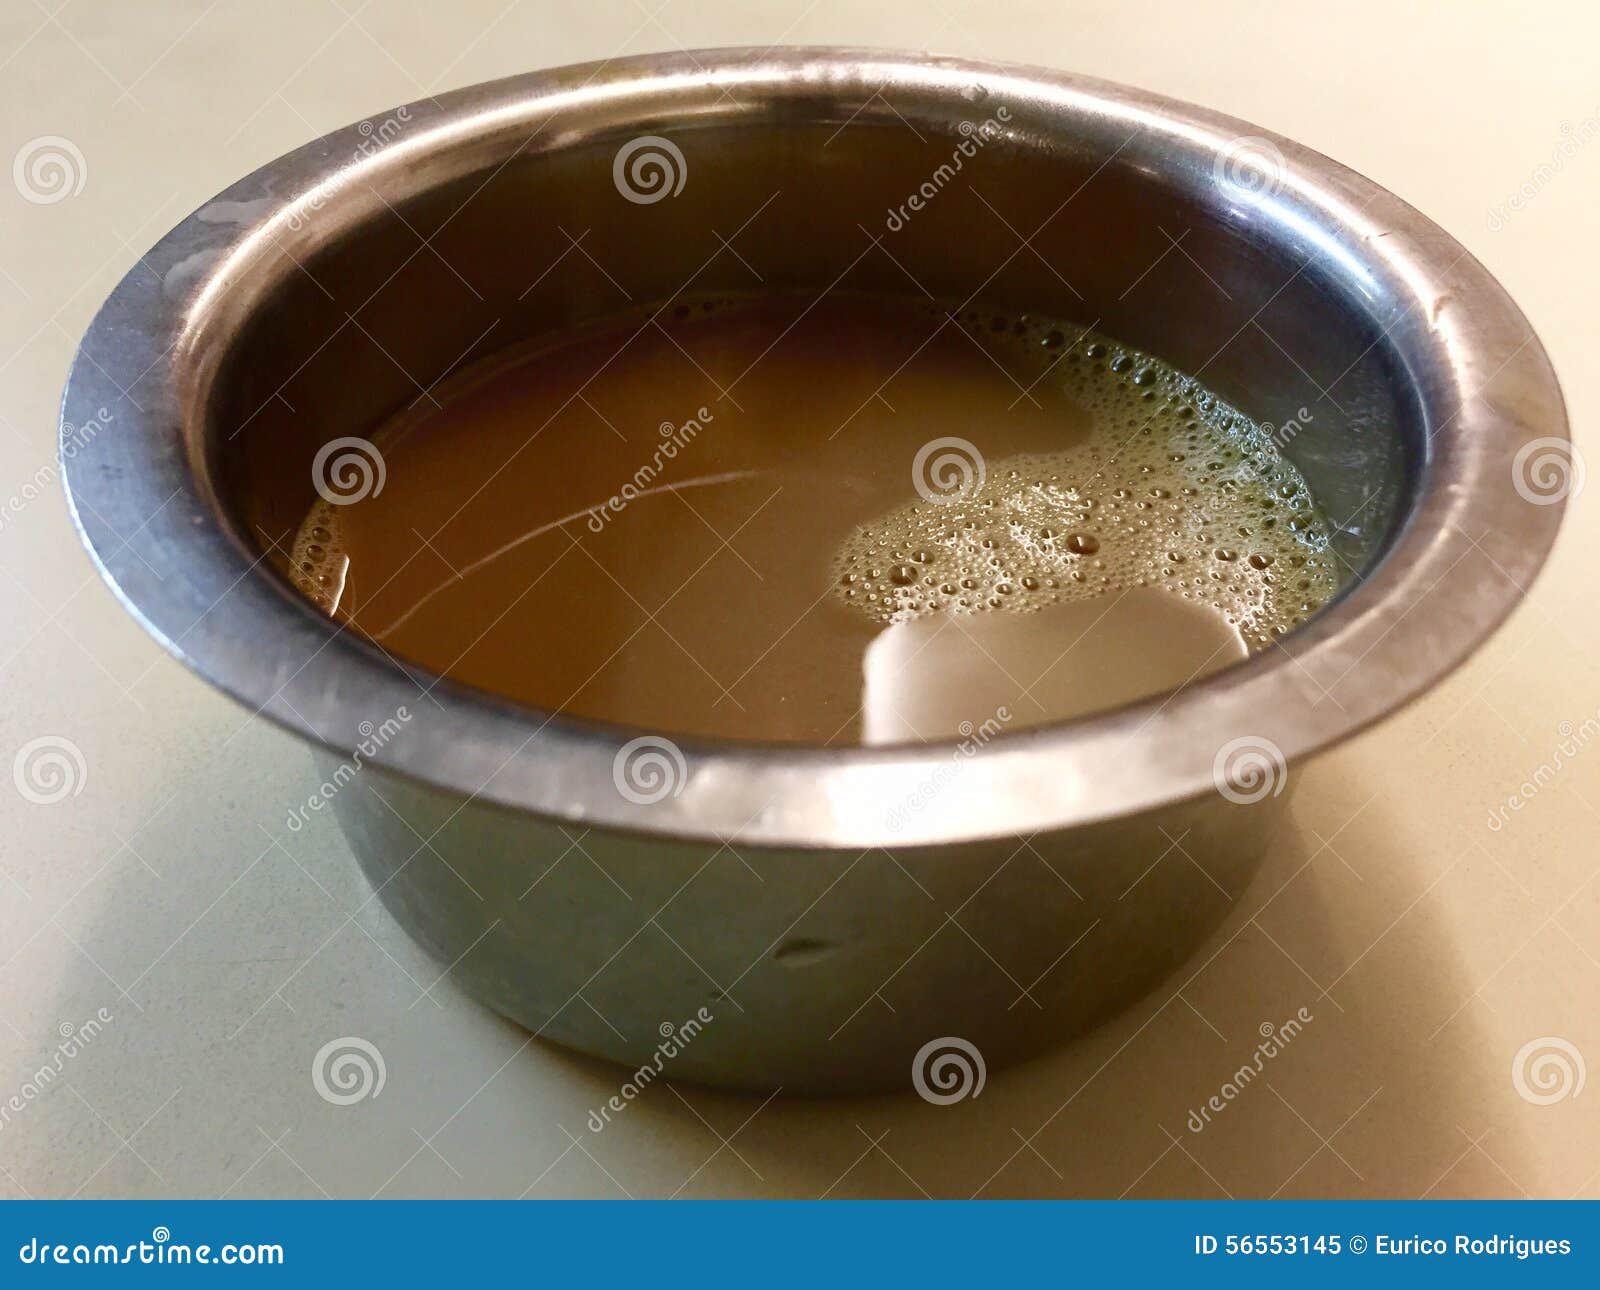 在dabarah (有有嘴墙壁的一个宽金属茶碟的南印地安过滤器咖啡). 南印地安过滤器咖啡是与美好酿造得到的滴露的混合生泡沫的和煮沸的牛奶做的咖啡饮料在传统印地安过滤器的碾碎的咖啡粉末